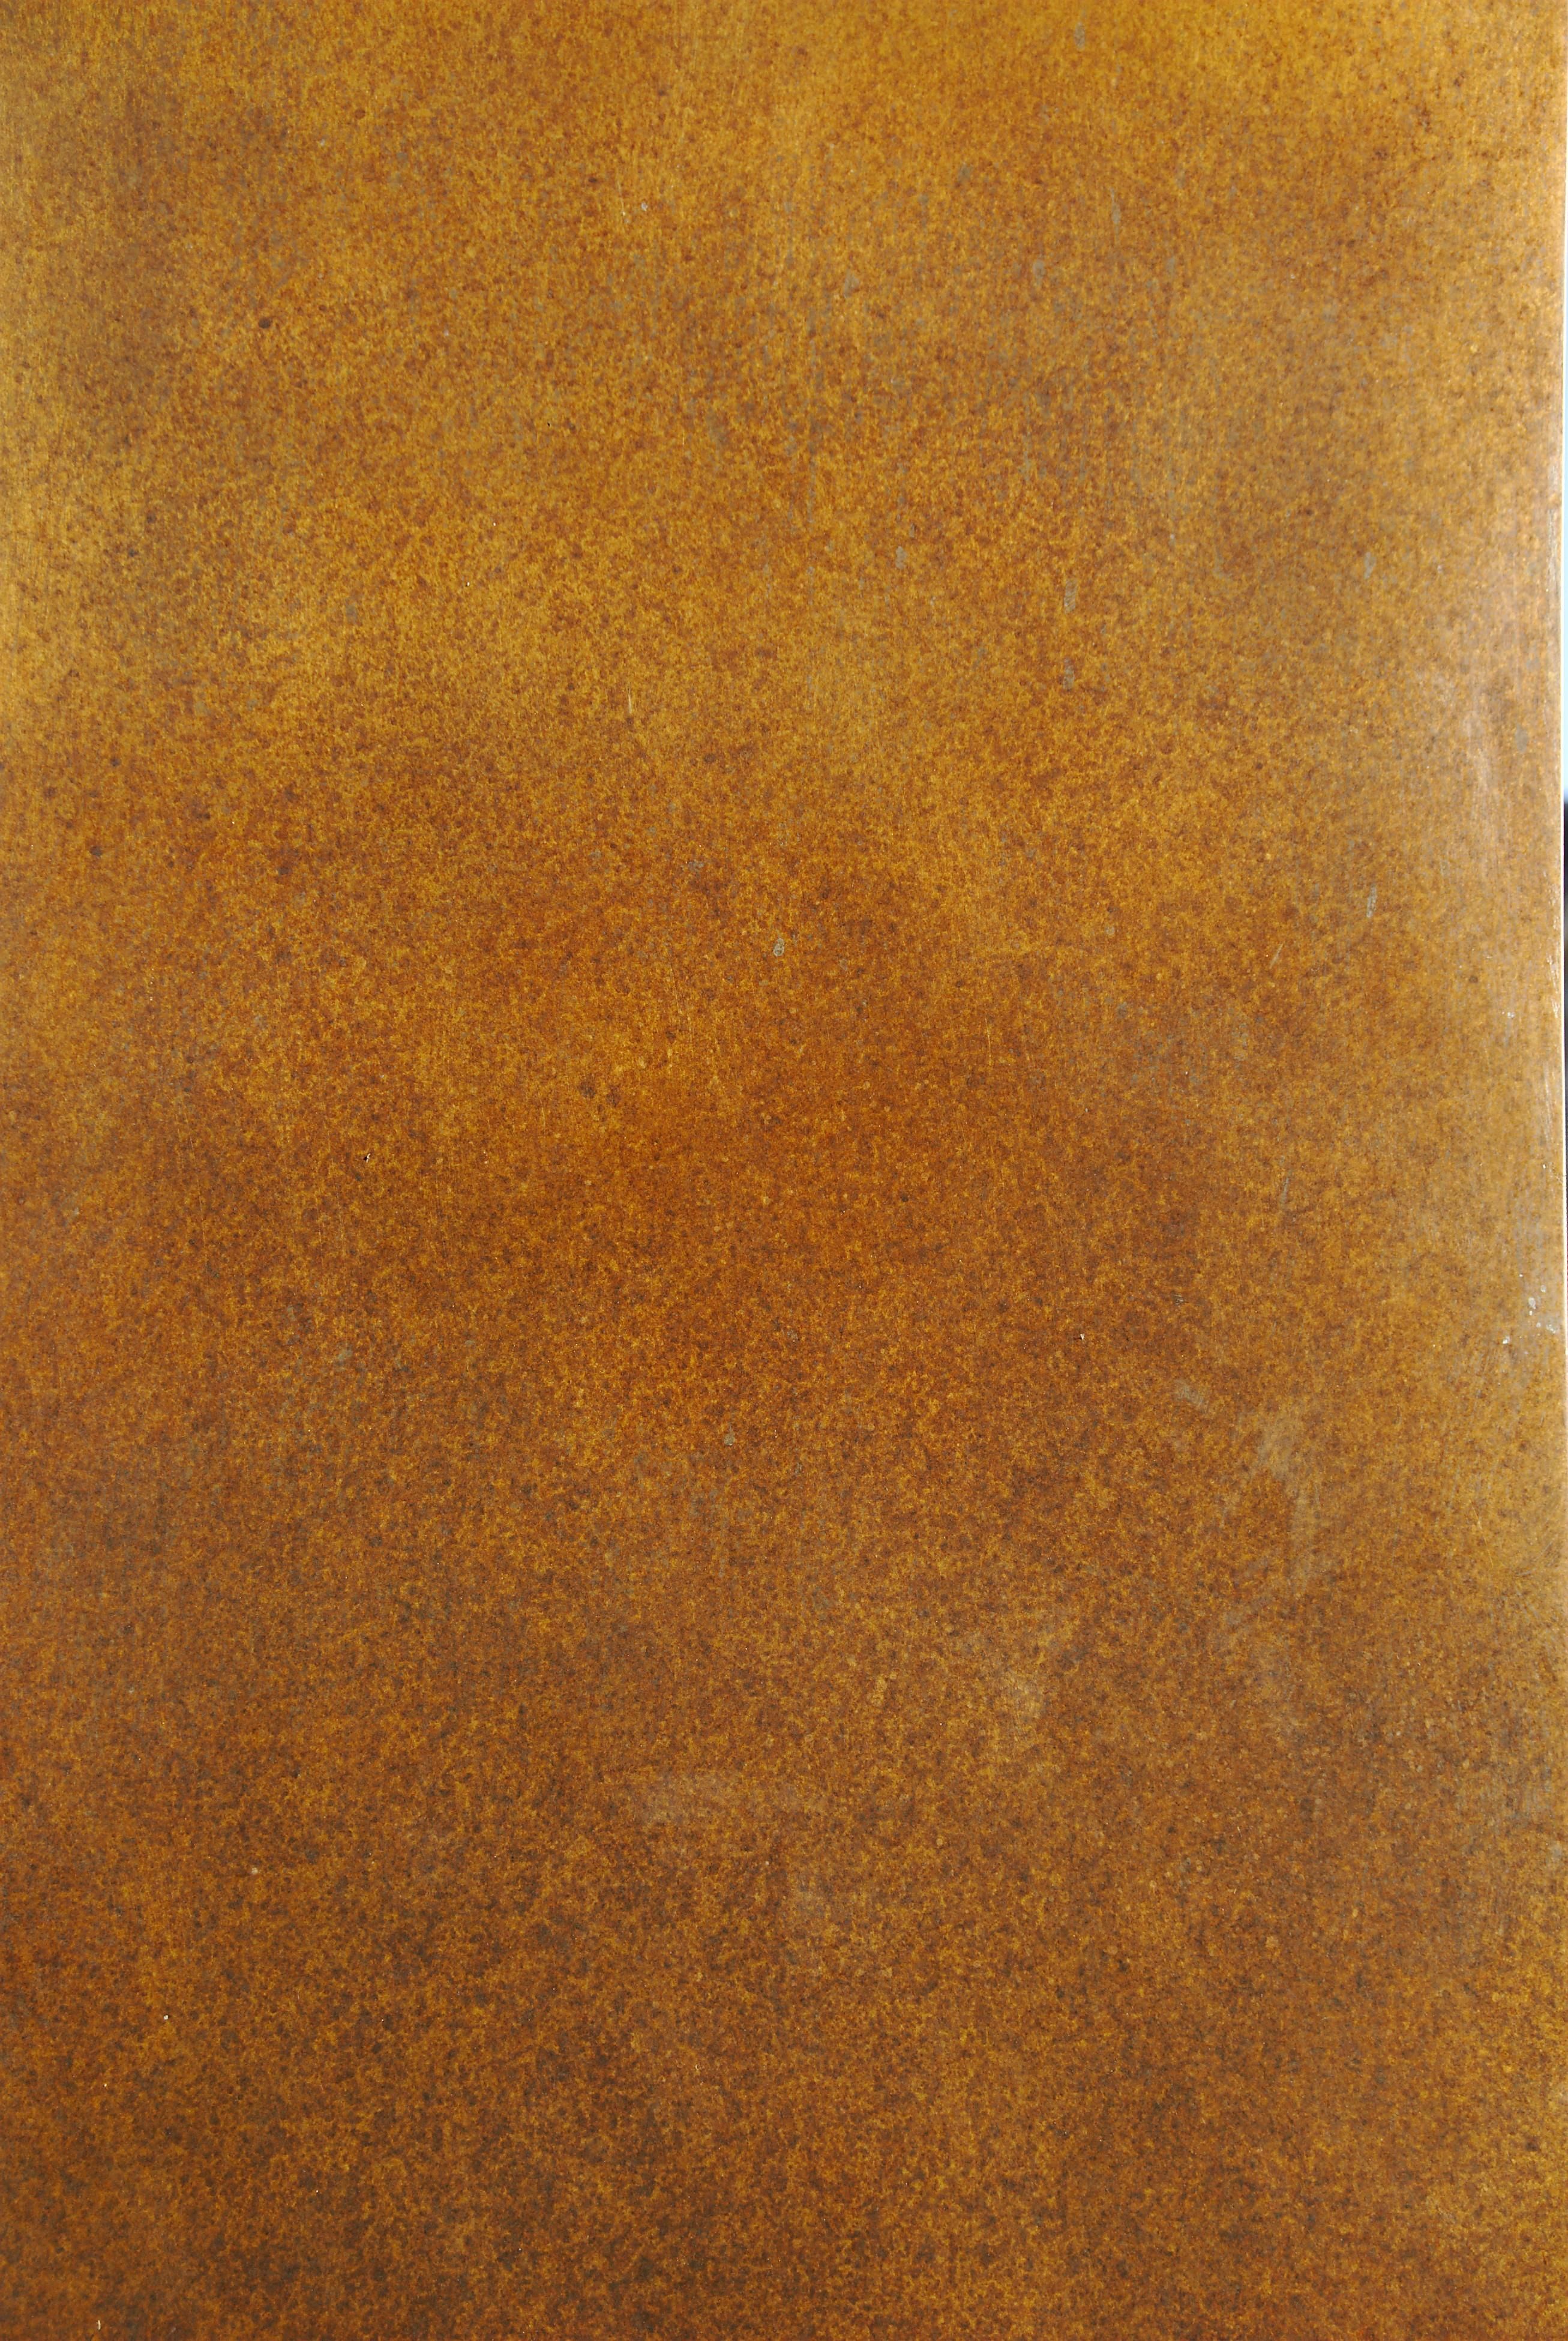 bronze texture.jpg - Wikimedia Commons